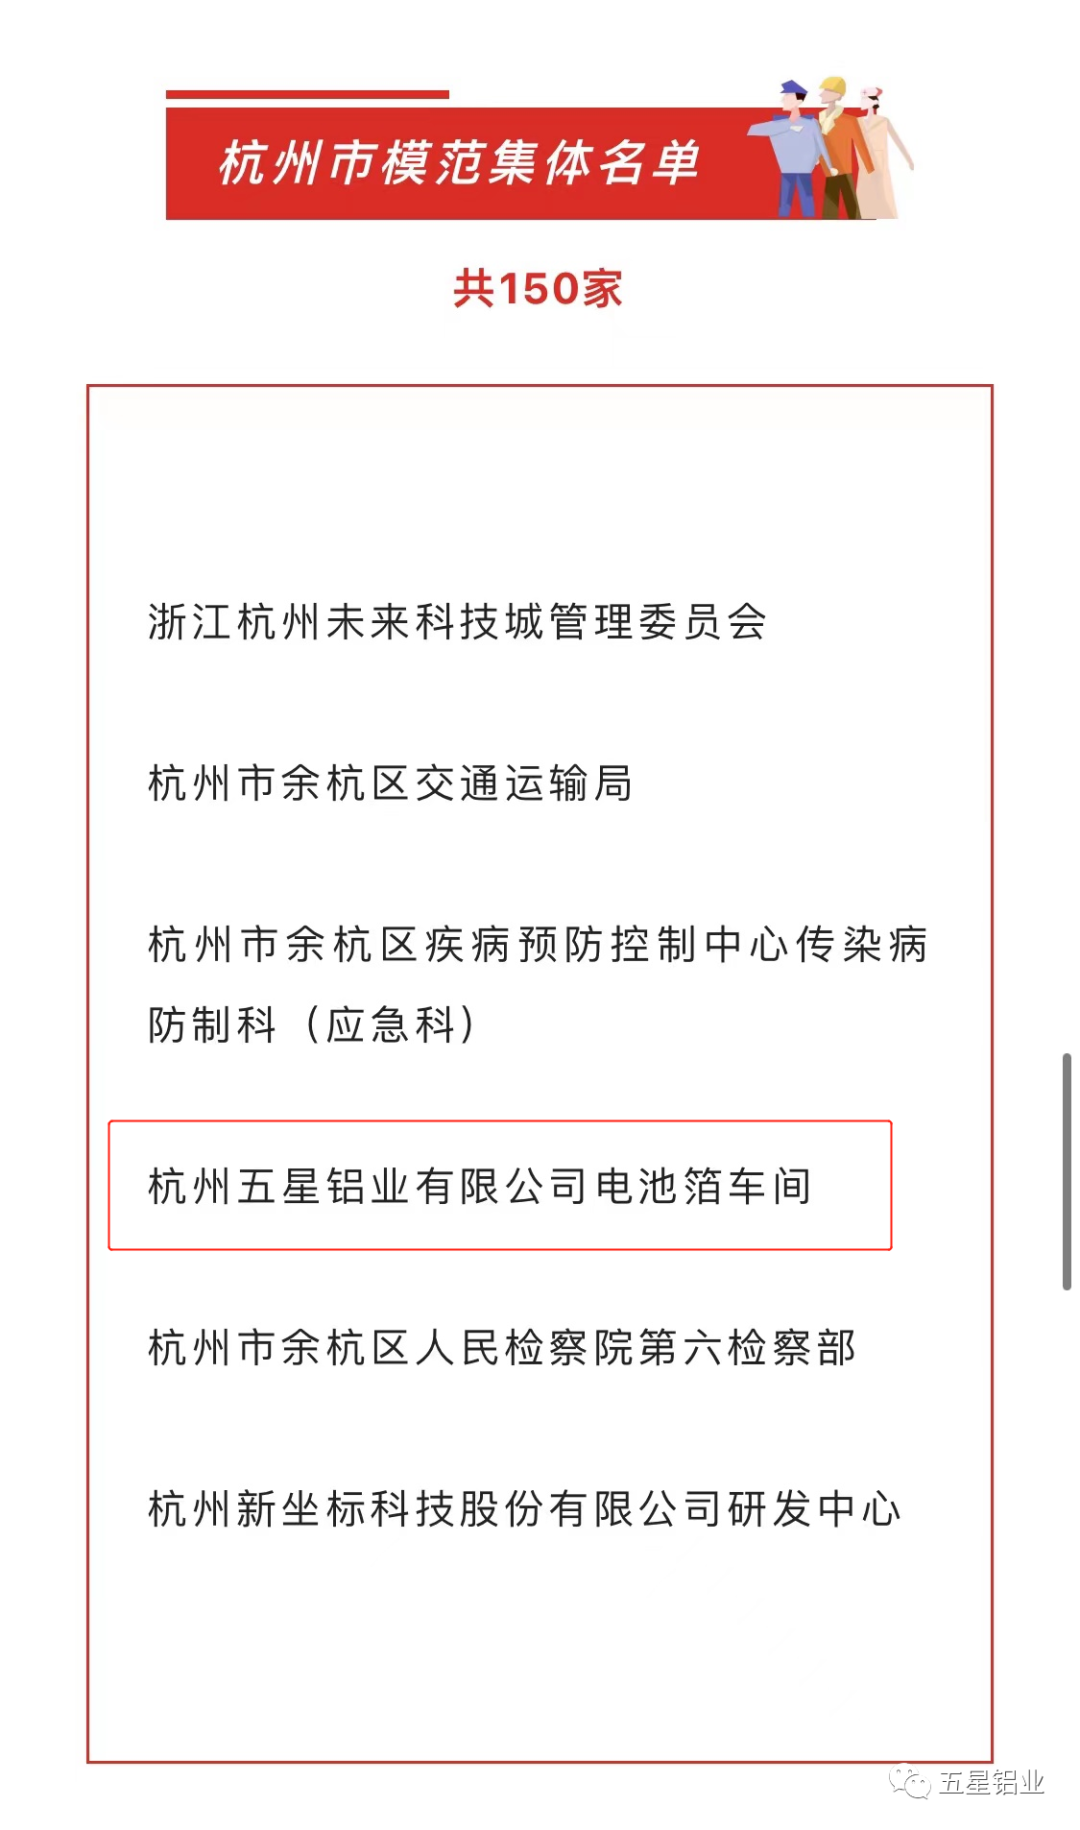 杭州五星铝业有限公司电池箔车间获评“杭州市模范集体” 